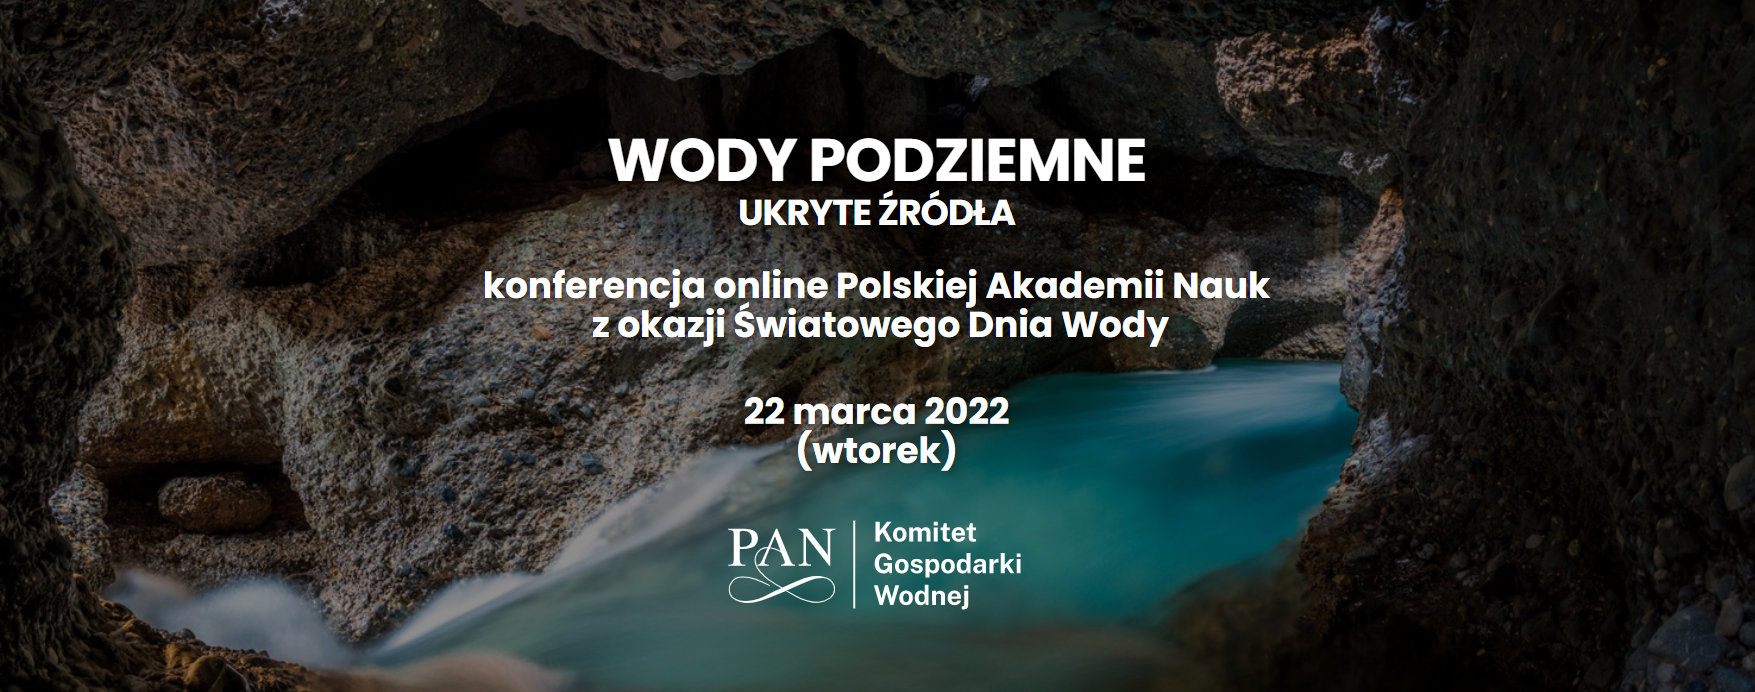 Plakat wydarzenia Dzień Wody 2022